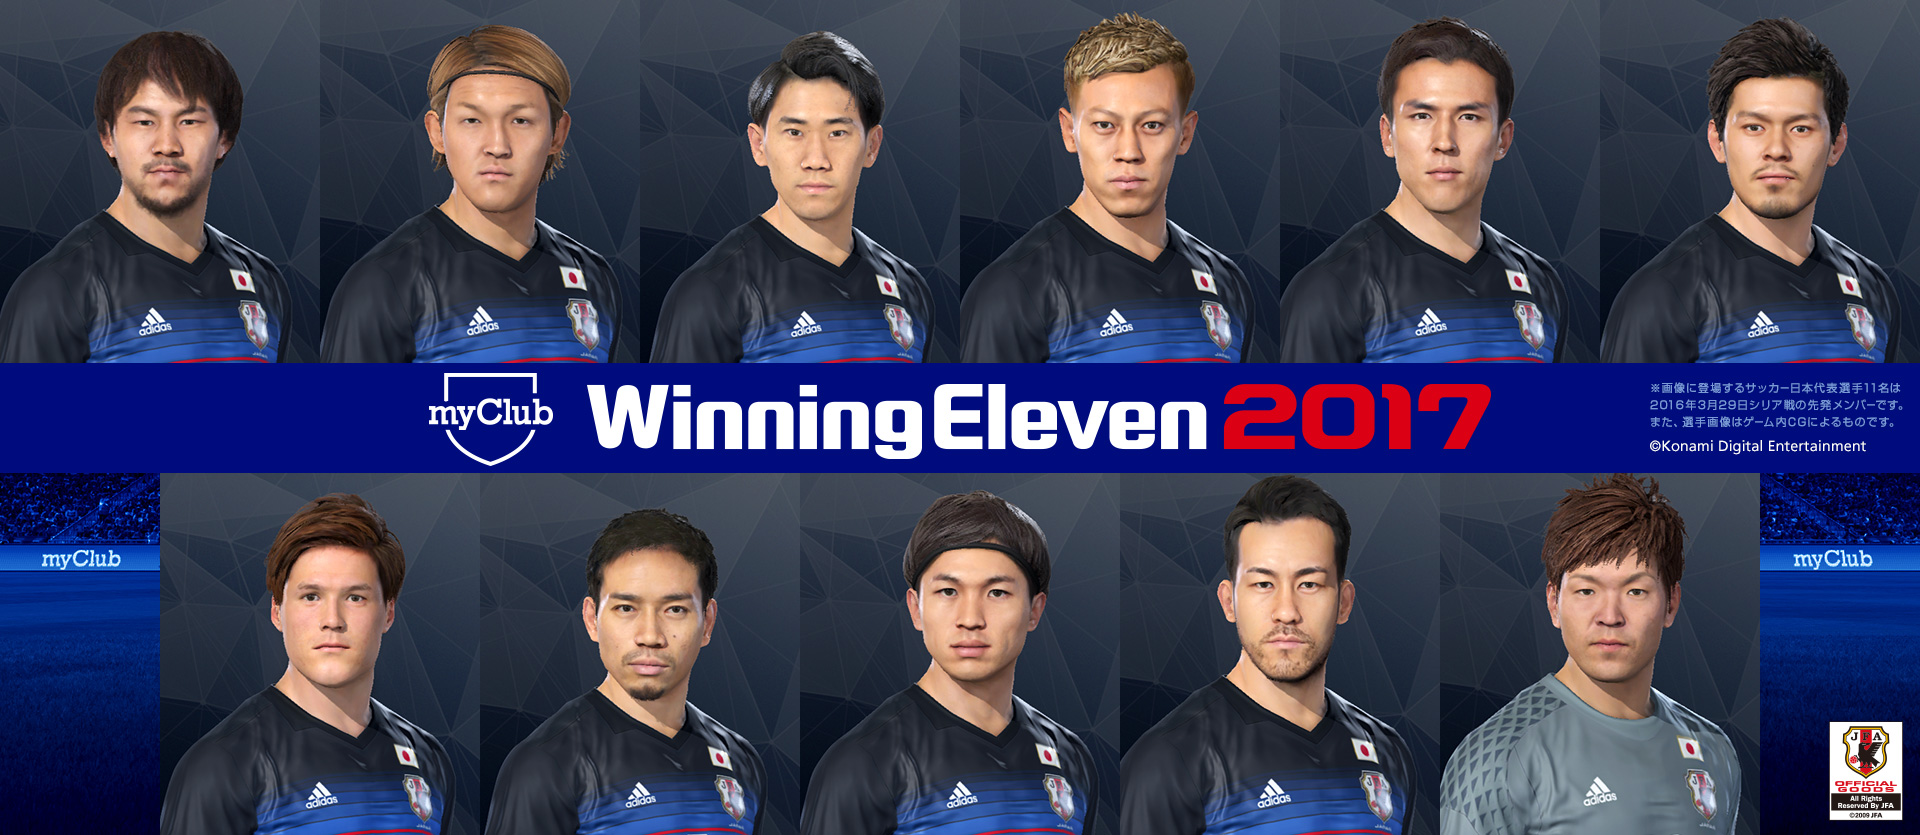 ウイニングイレブン 17 サッカー日本代表のフェイスデータを公開 Game Watch